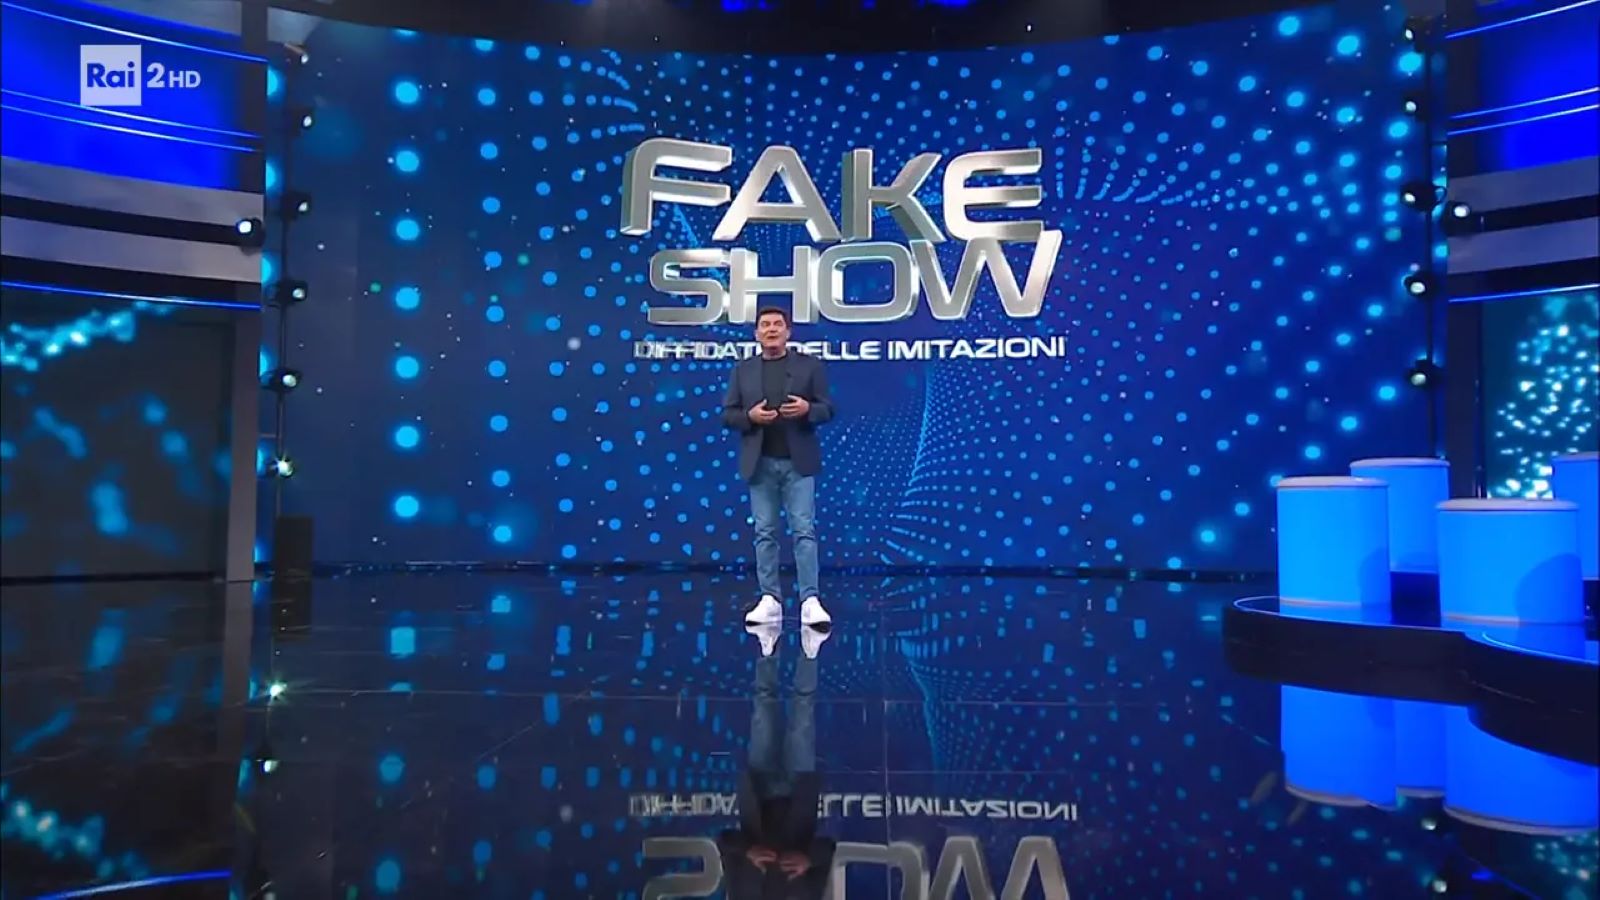 Fake Show-Diffidate delle imitazioni con Max Giusti chiude stasera su Rai 2: anticipazioni e ospiti